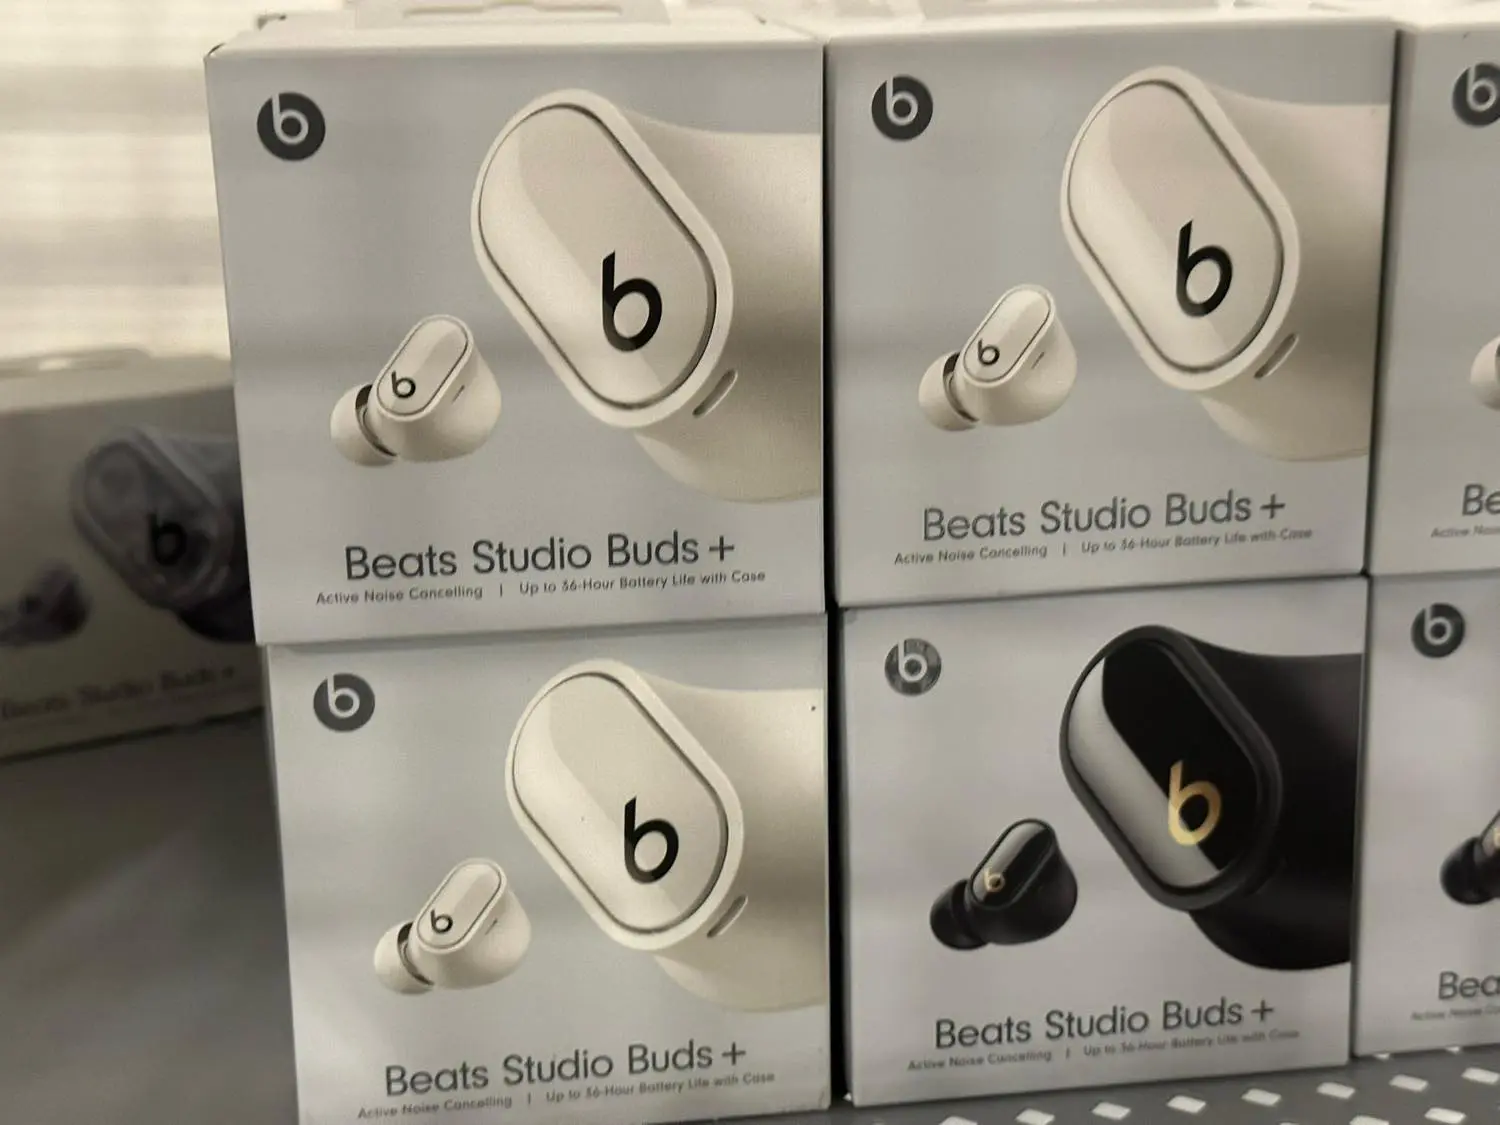 Beatsの新型ワイヤレスイヤホン｢Beats Studio Buds+｣の新たな